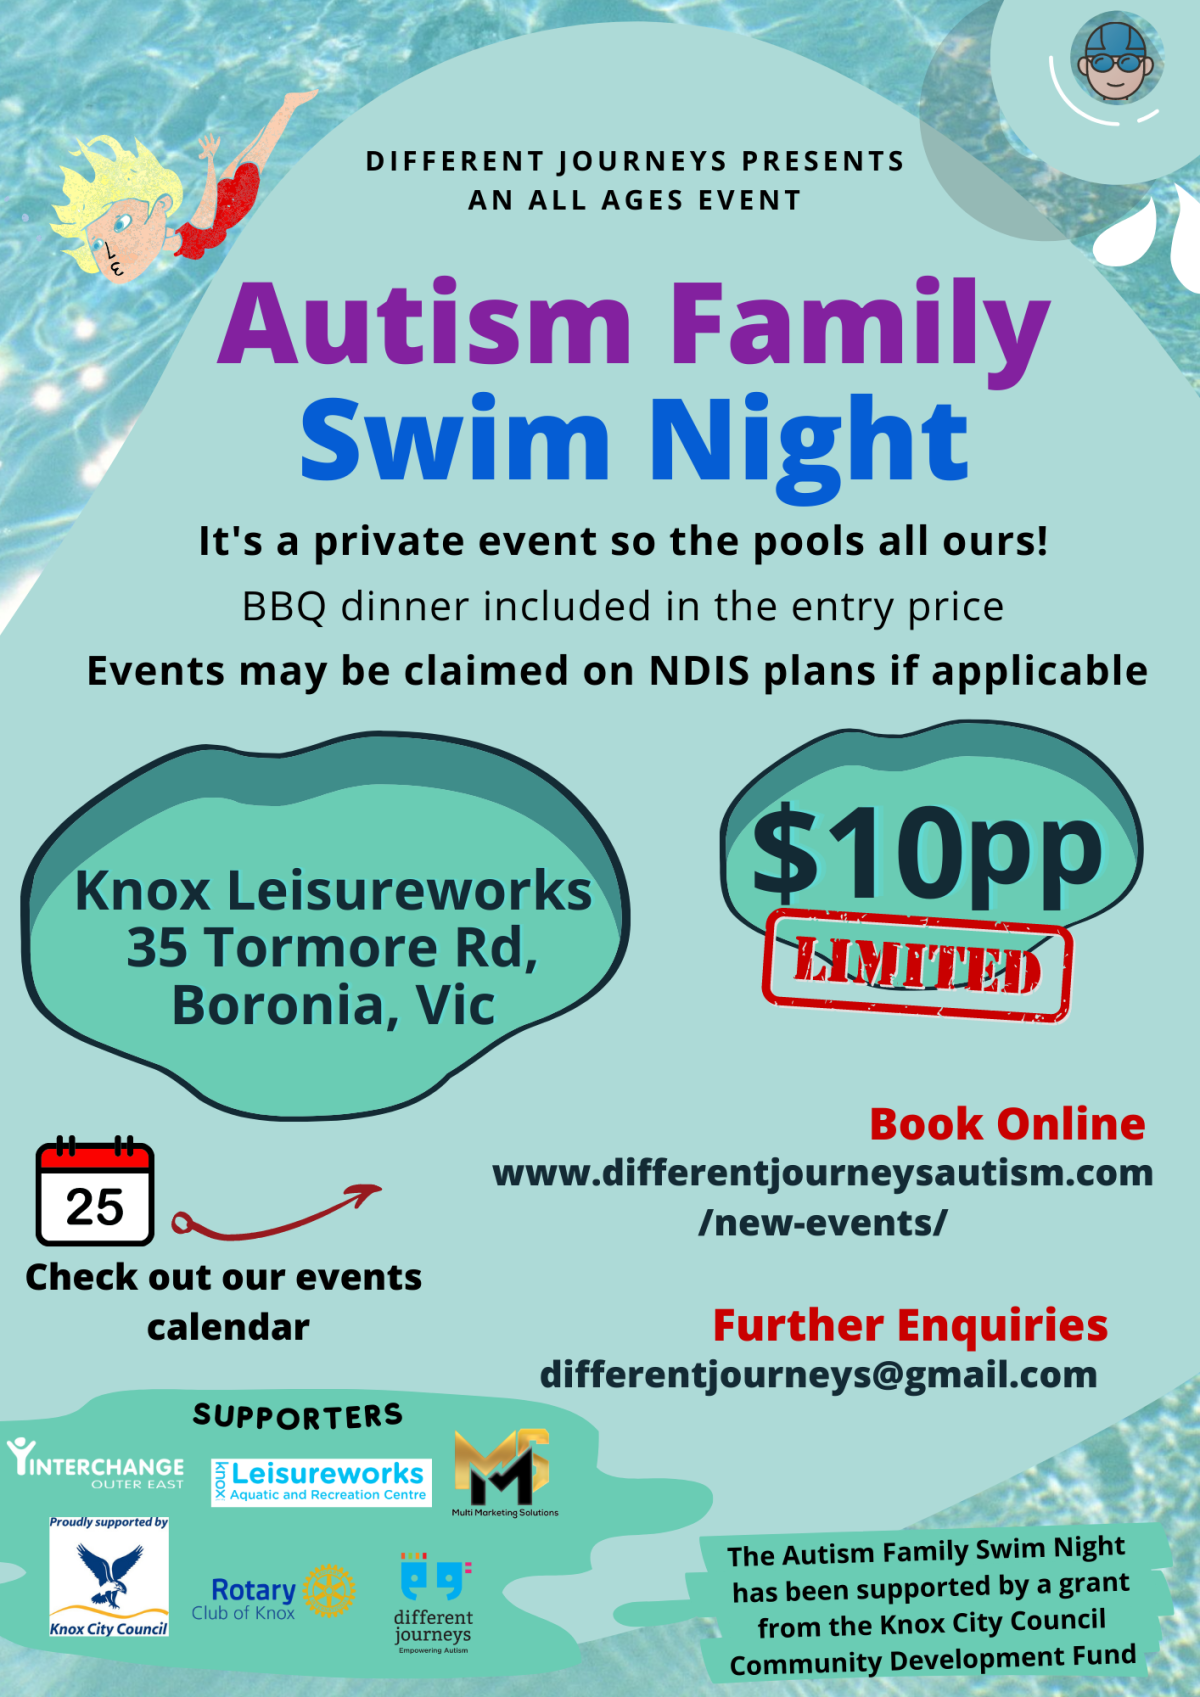 Autism Family Swim Night at Knox Leisureworks